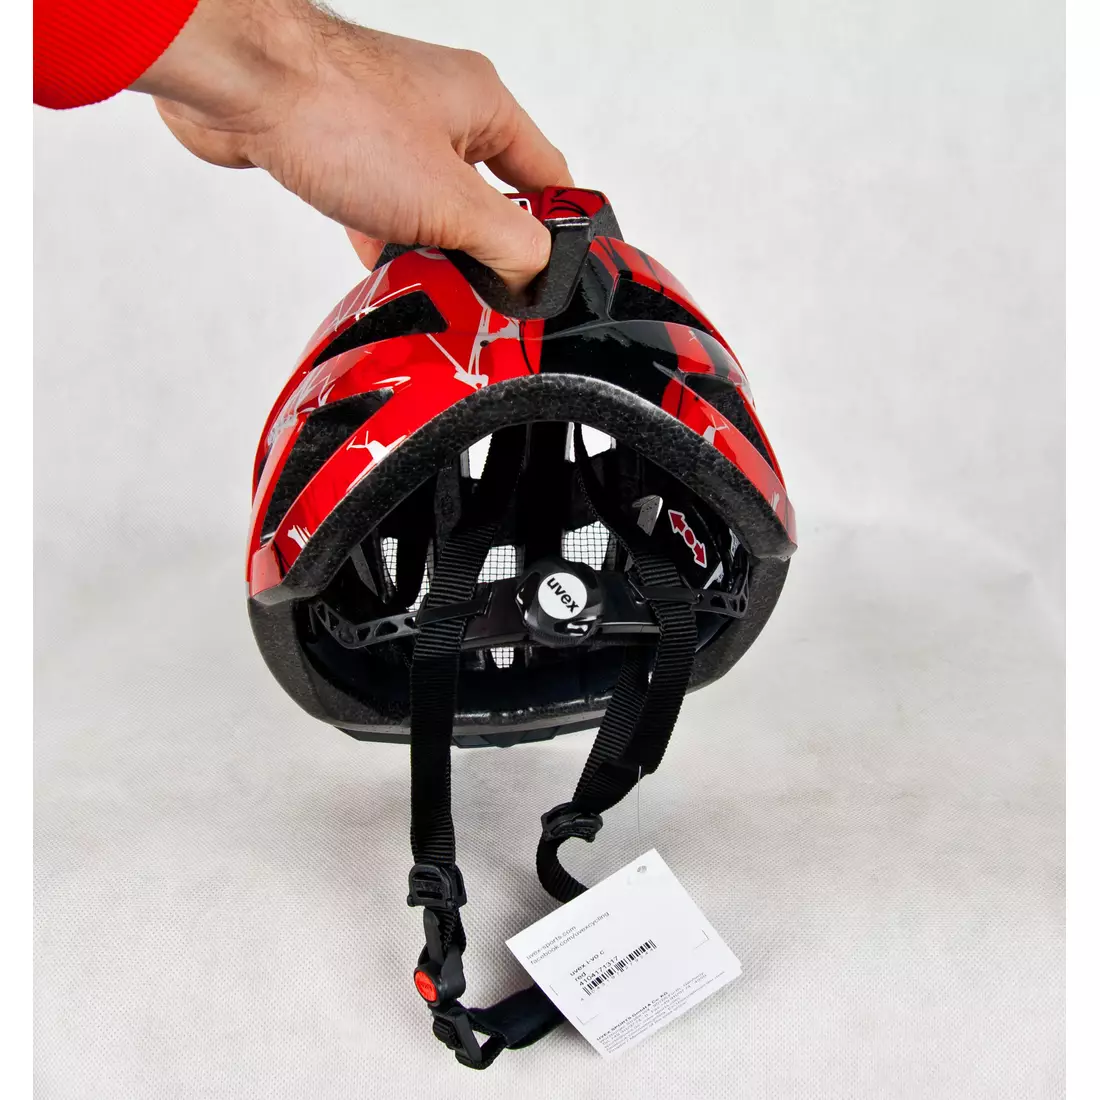 UVEX I-VO C bicycle helmet red